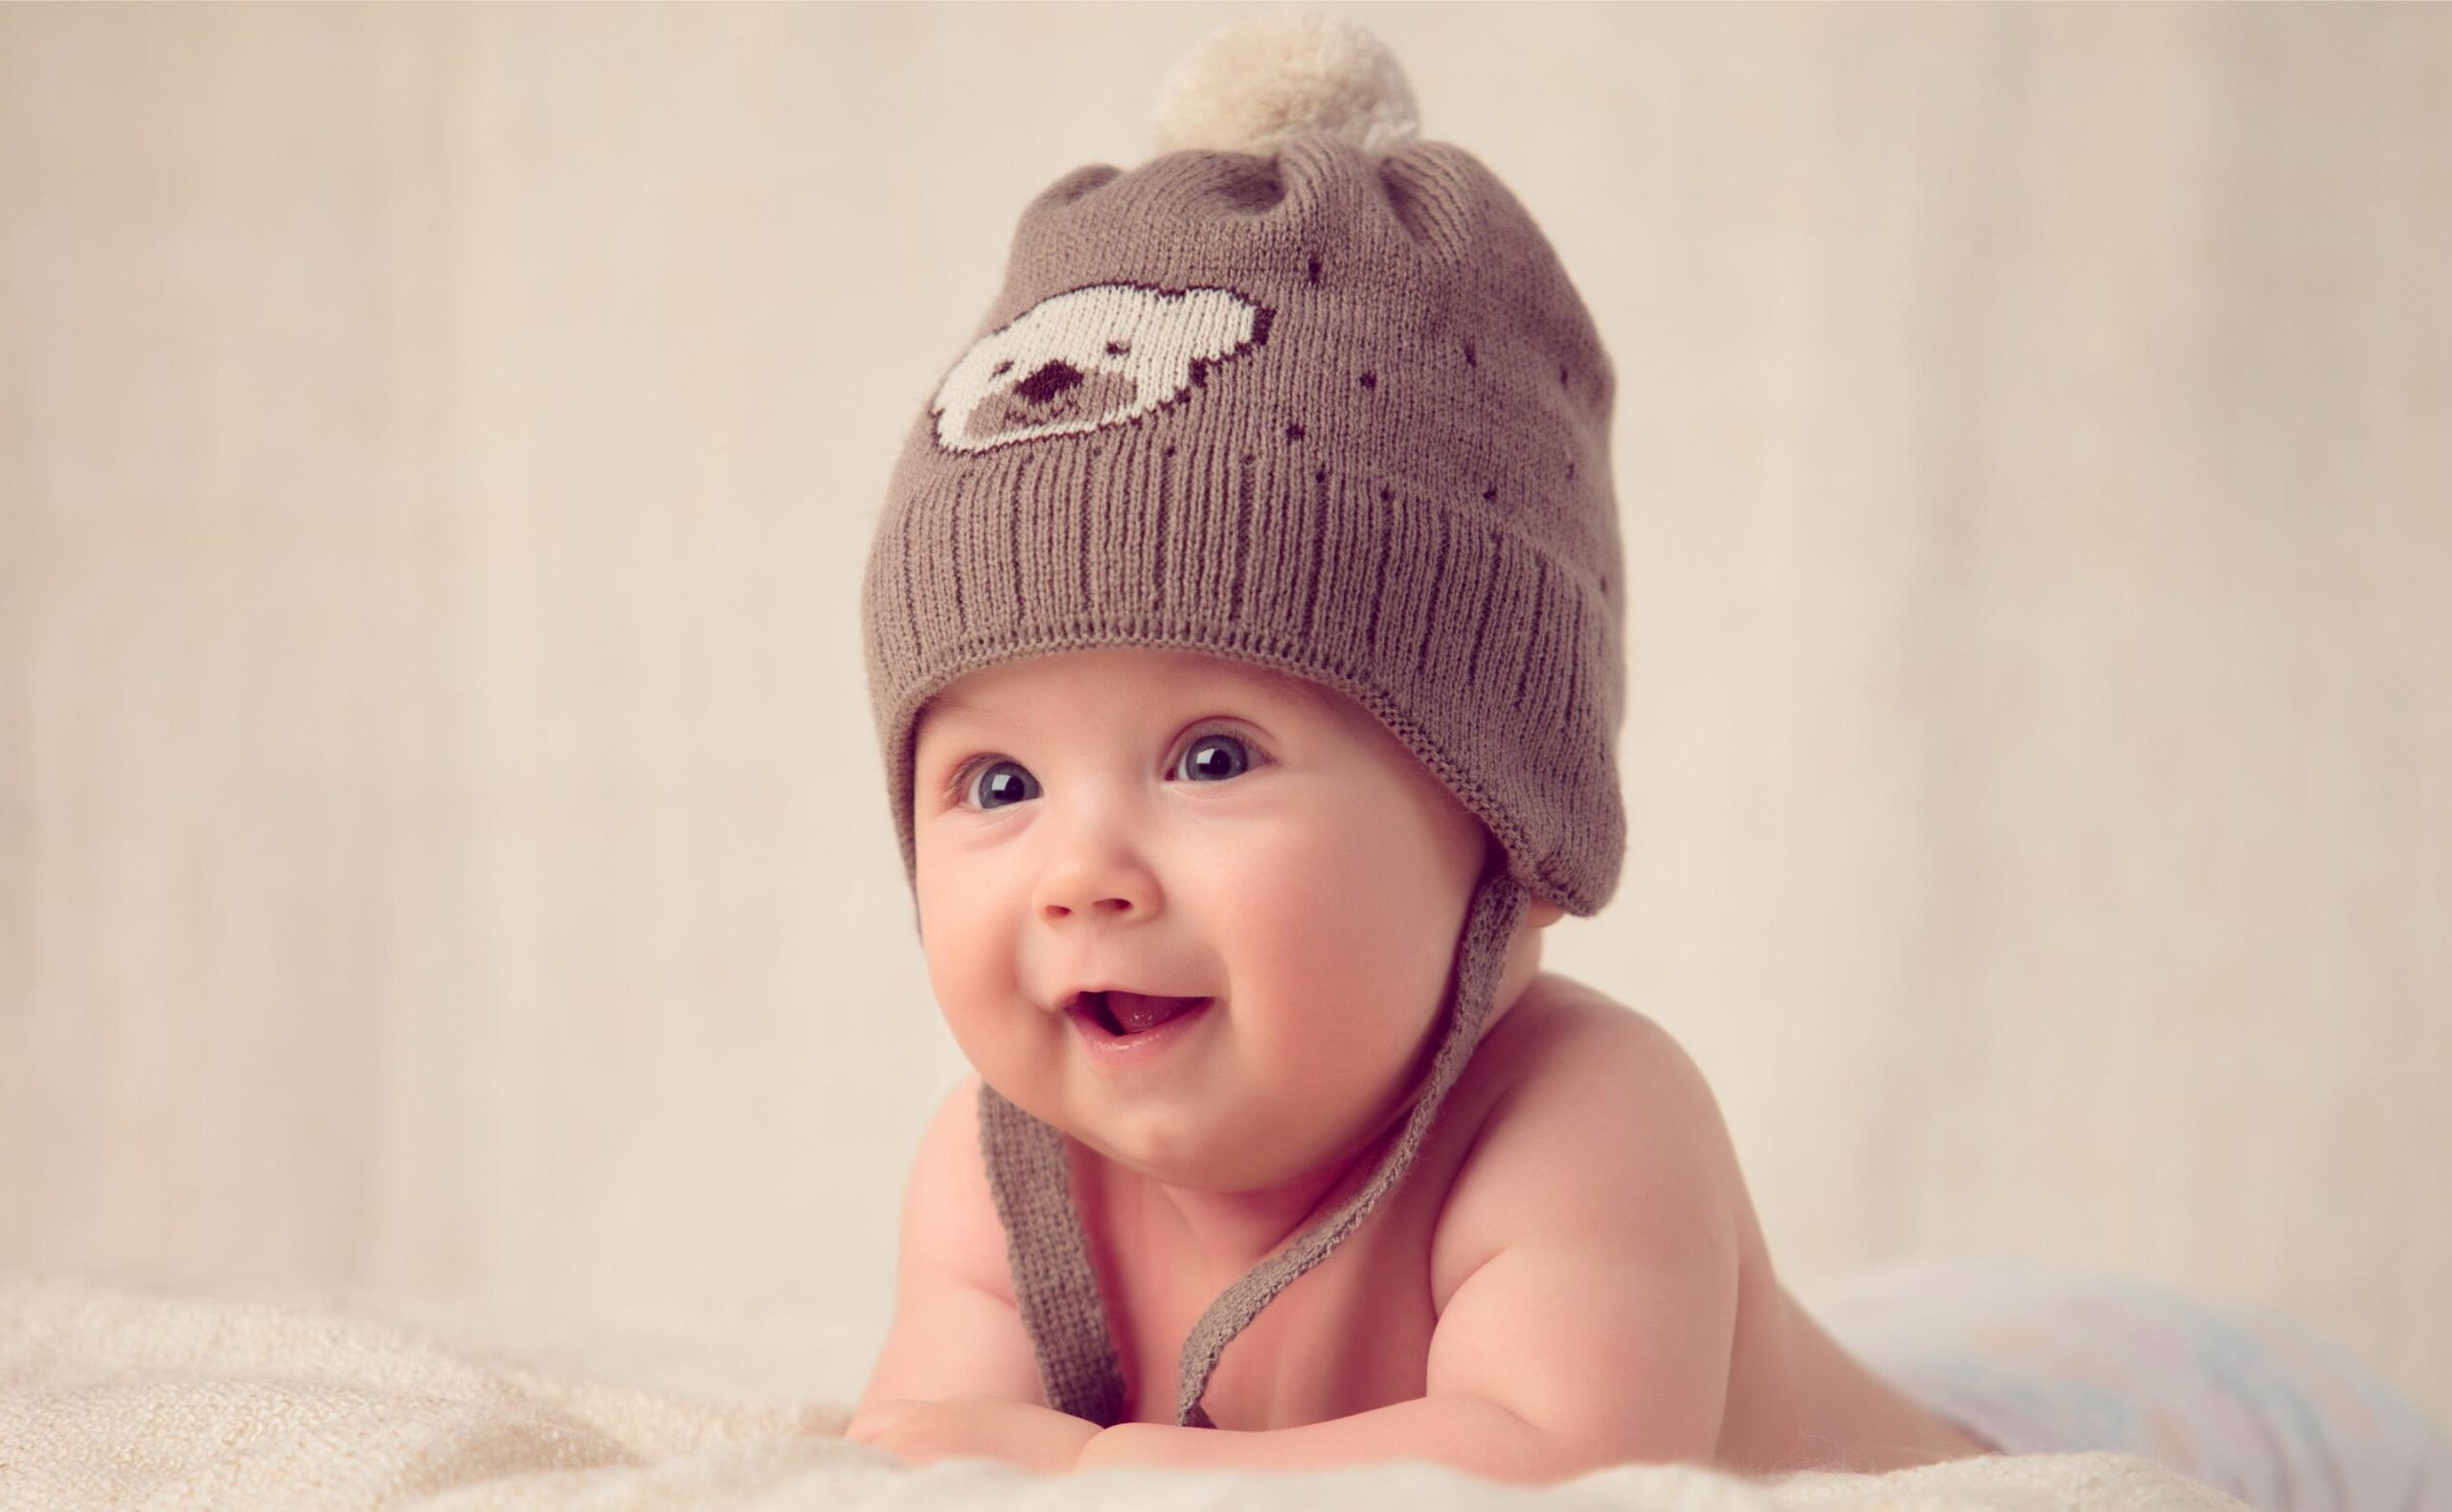 خلفية لطفل ولد يرتدي قبعة فرو